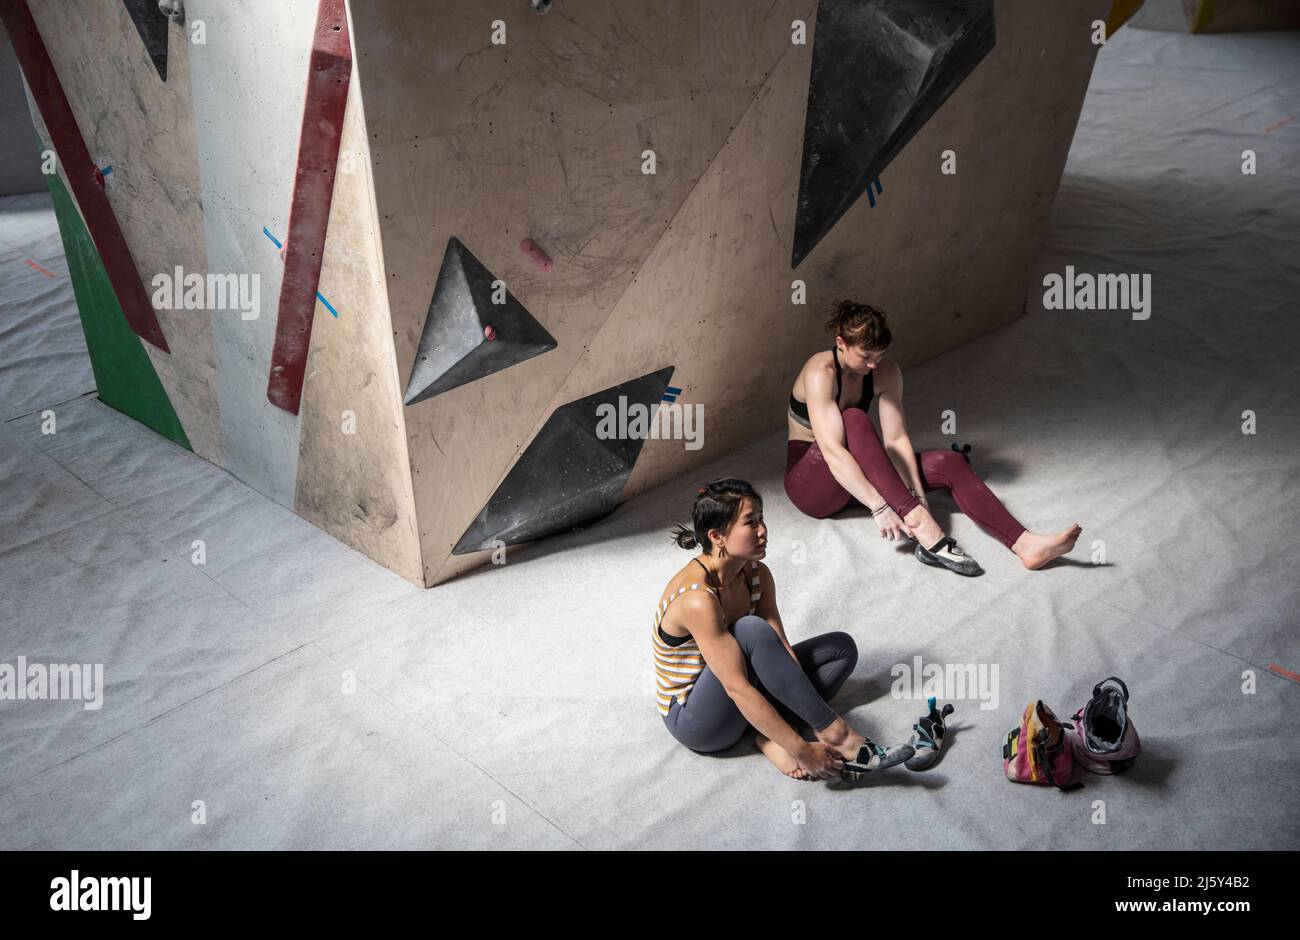 Women putting on shoes below rock climbing wall Stock Photo